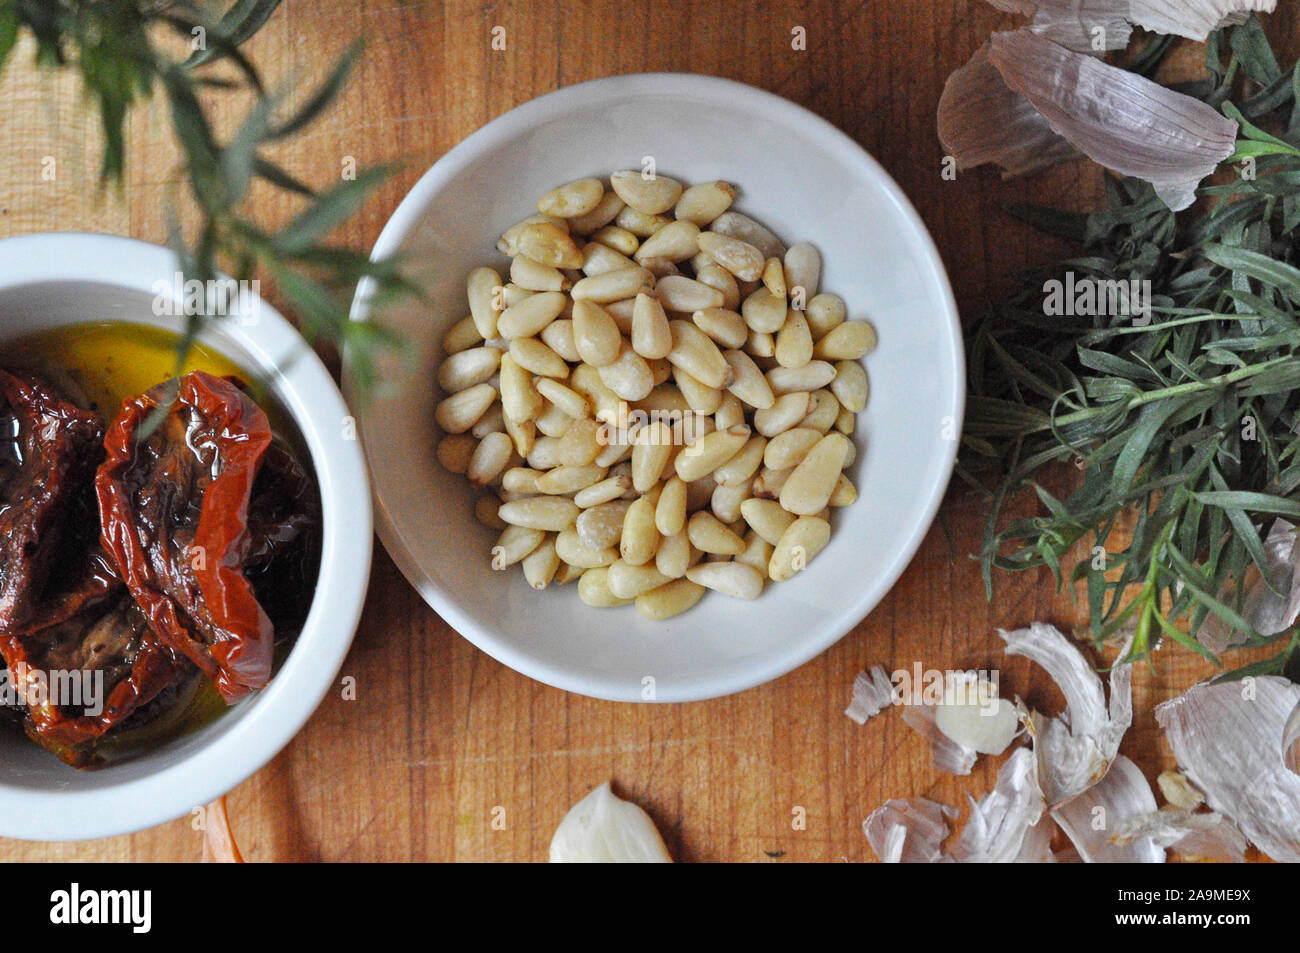 Les noix de pin, l'estragon et les tomates séchées dans des bols en céramique blanche Banque D'Images